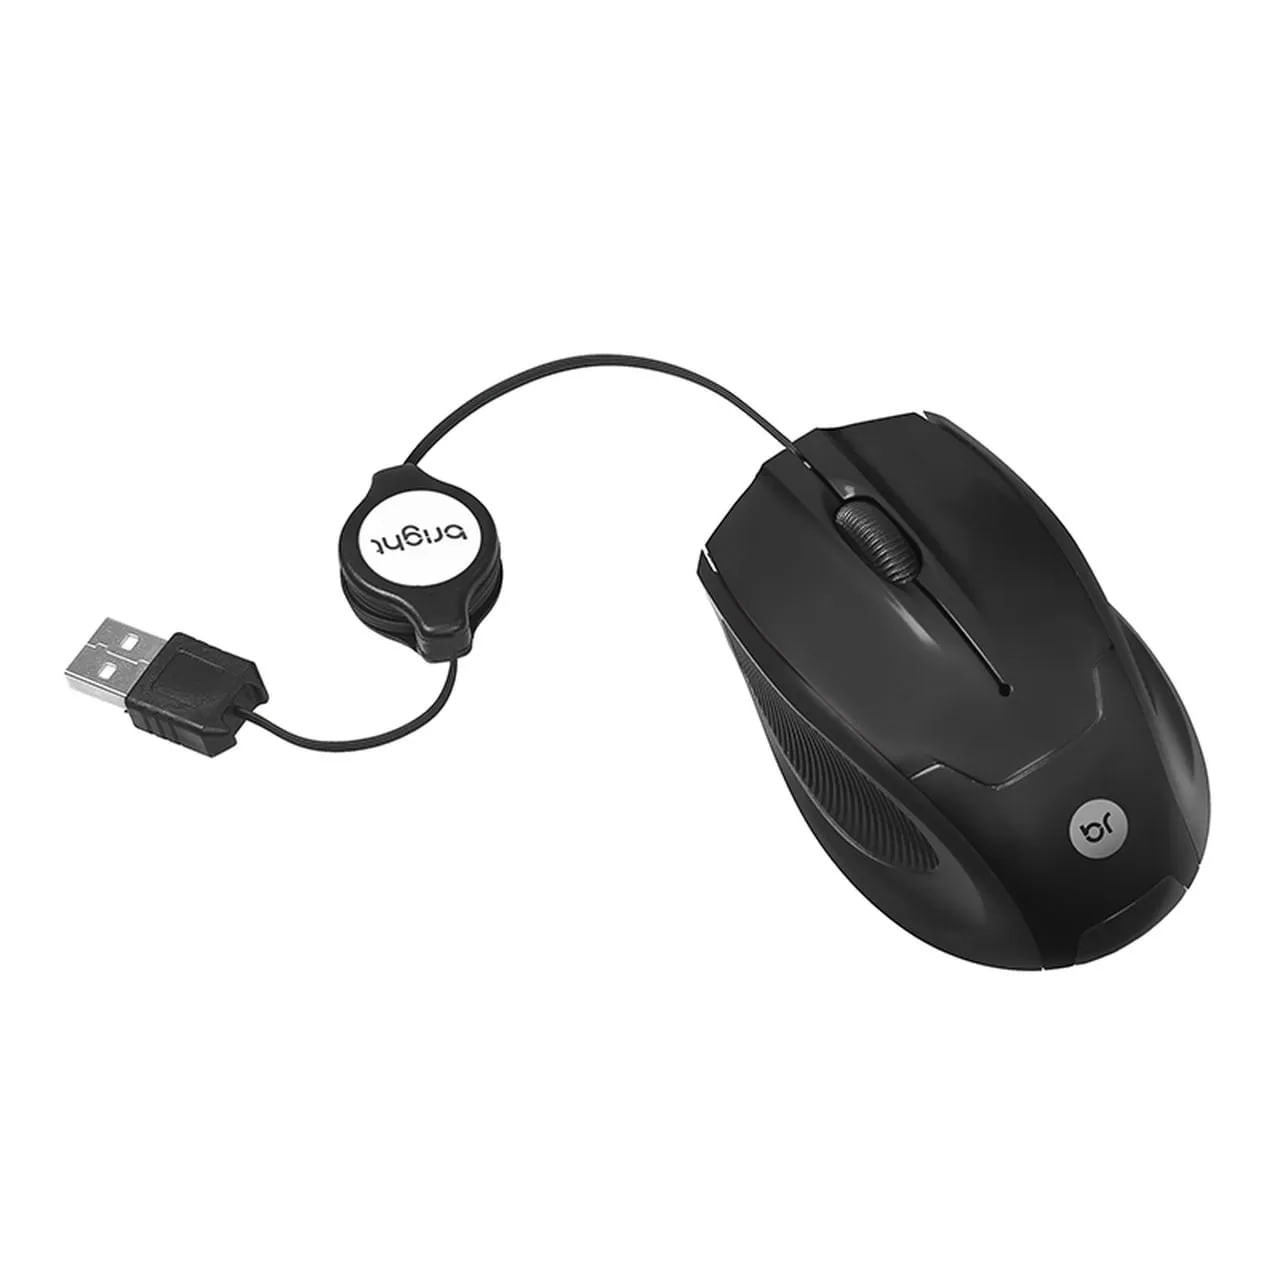 Mini Mouse Óptico Retrátil USB Bright 0111